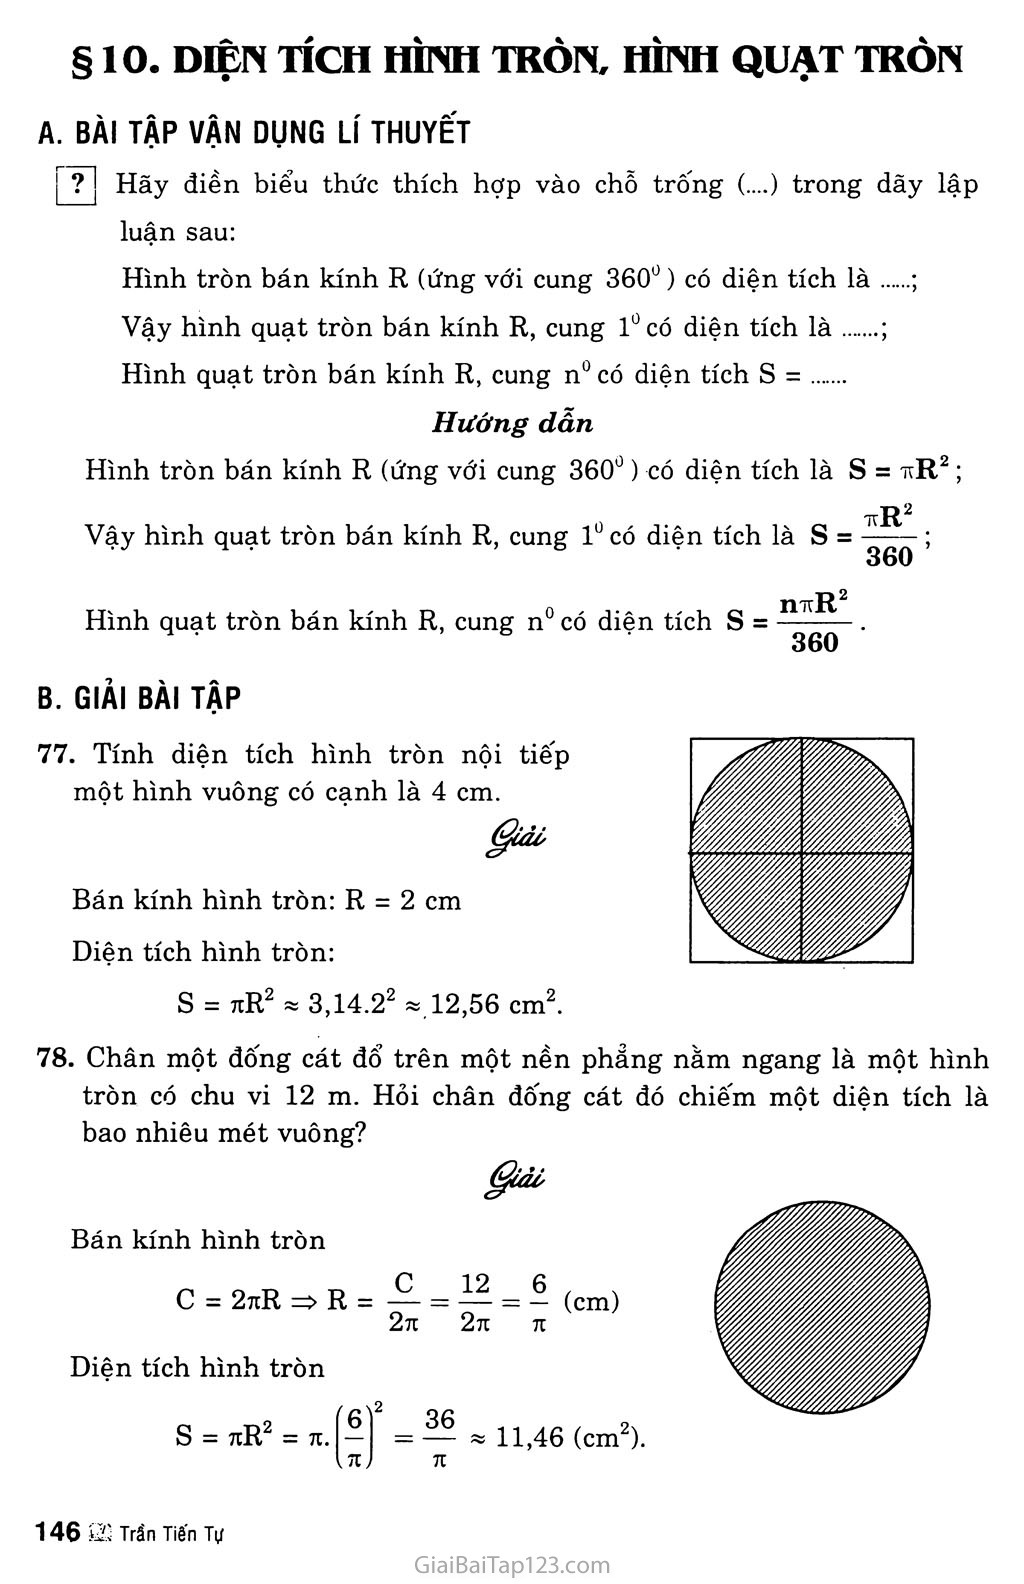 Tập tinCung tròn và hình quạt trònpng  Wikipedia tiếng Việt